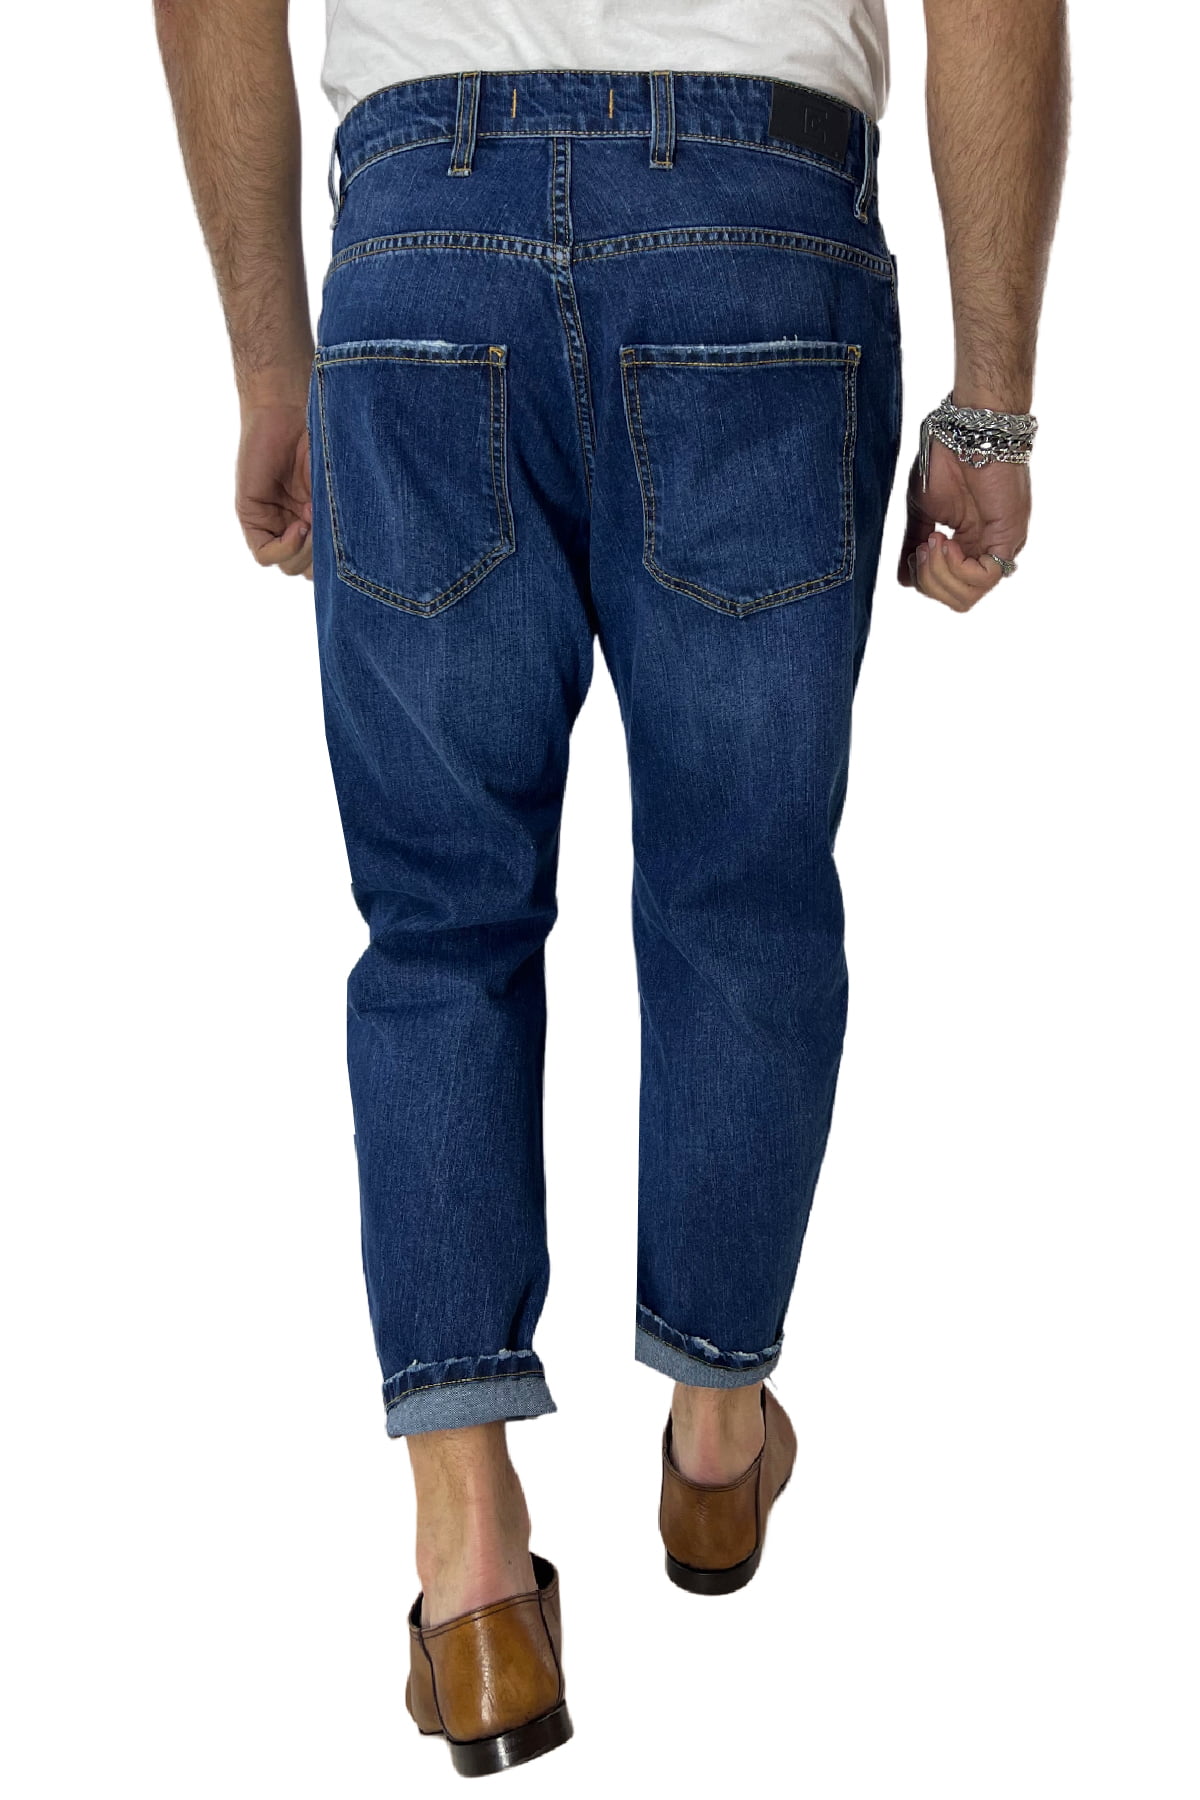 Jeans da uomo con sfumature bianche modello 5 tasche regular fit made in italy